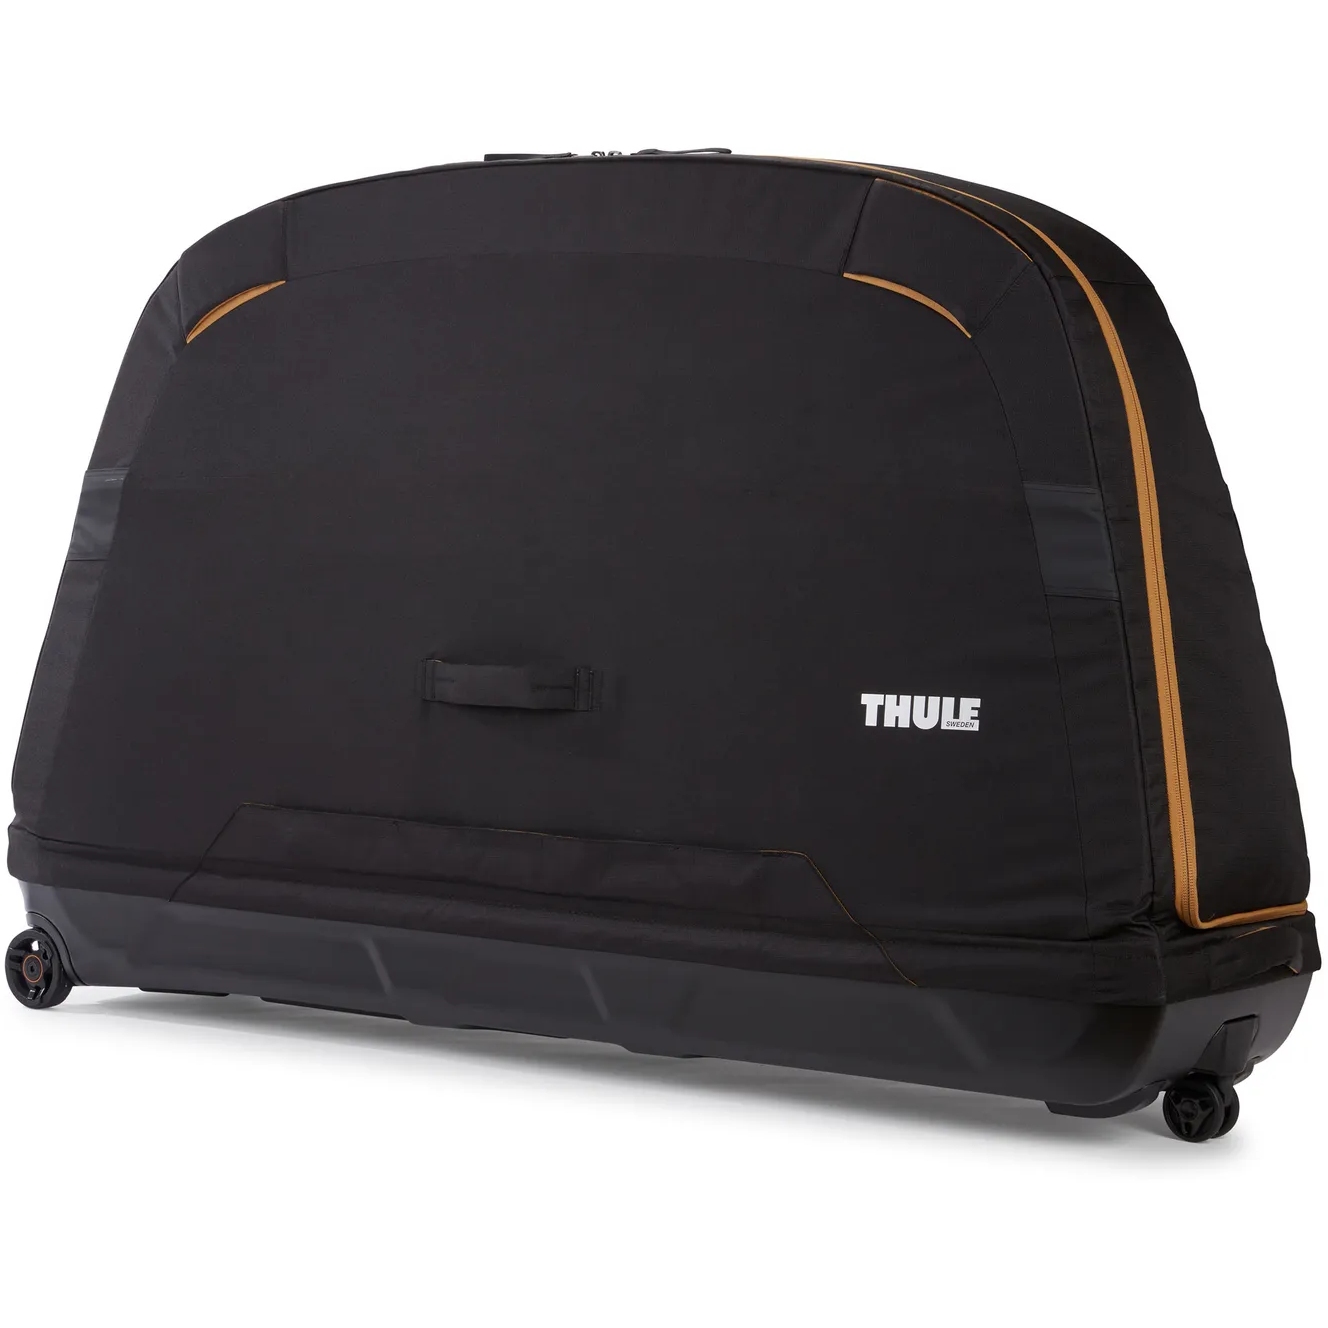 Produktbild von Thule Roundtrip MTB Fahrradtransporttasche - schwarz